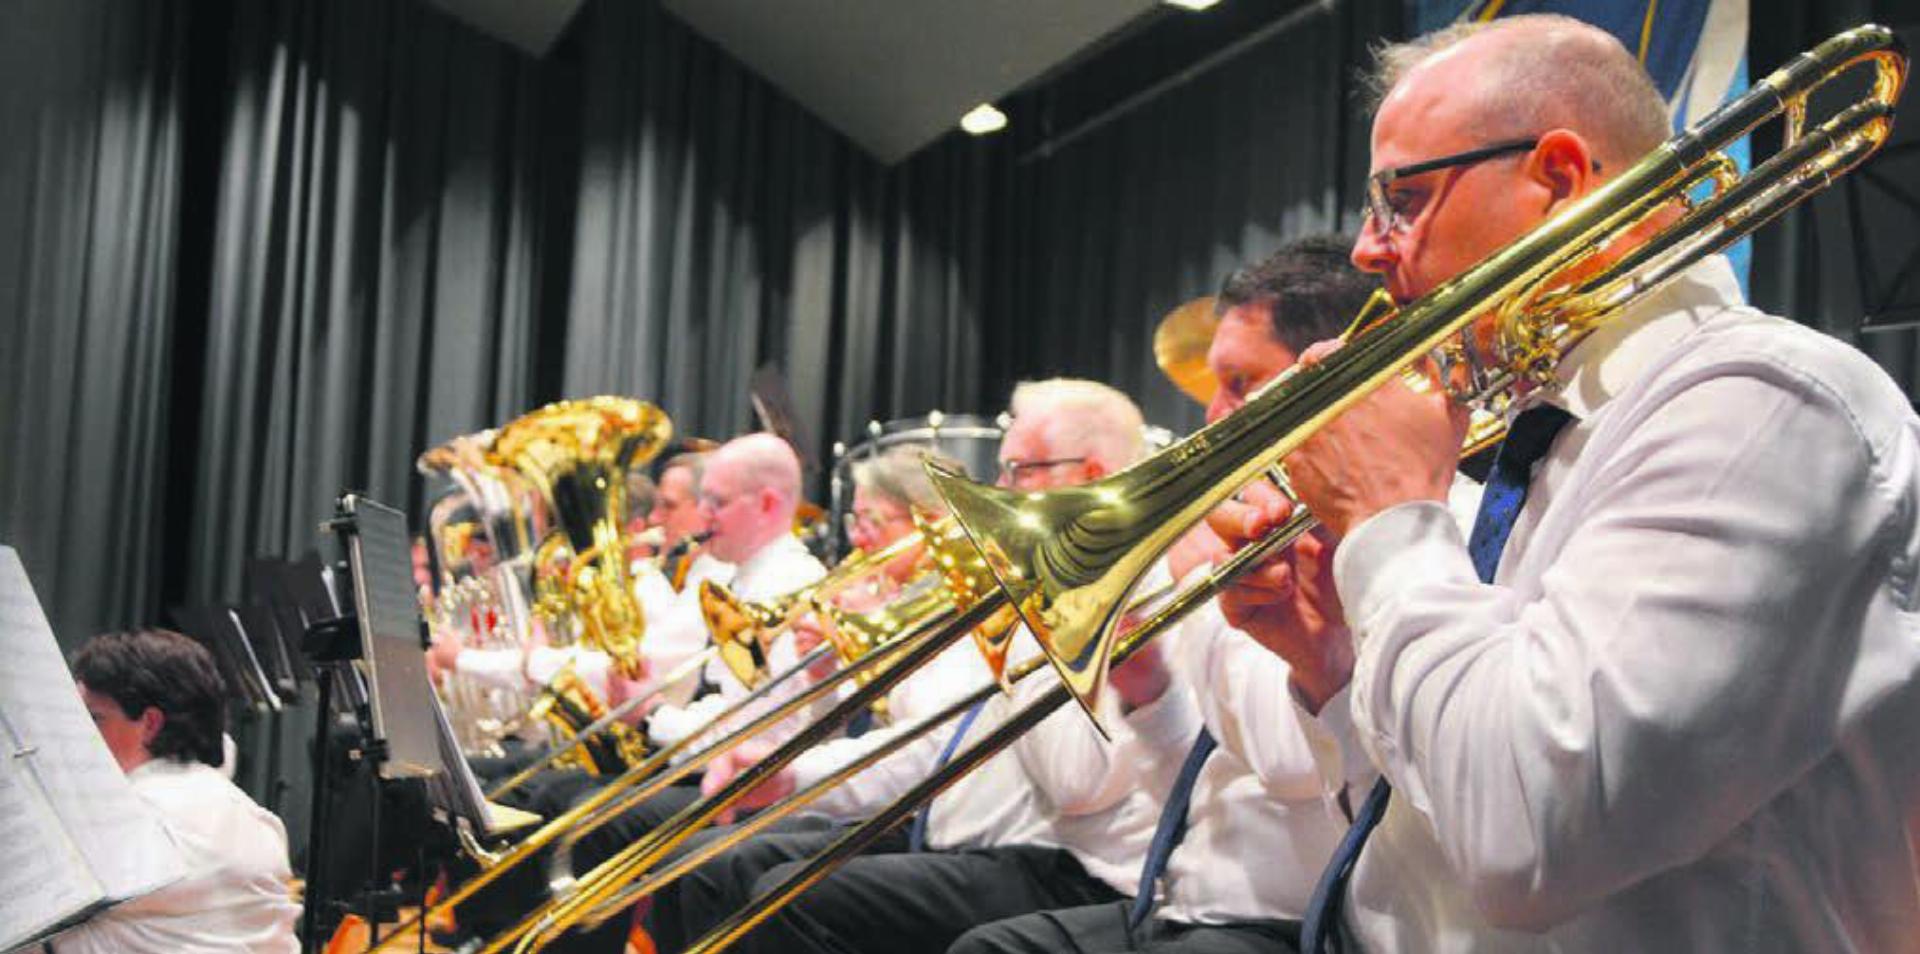 In Reih und Glied – 32 Musikantinnen und Musikanten zählt der Verein aktuell. Die Bandbreite an Instrumenten reicht von der Posaune über die Trompete bis zur Querflöte und zum Es-Horn.